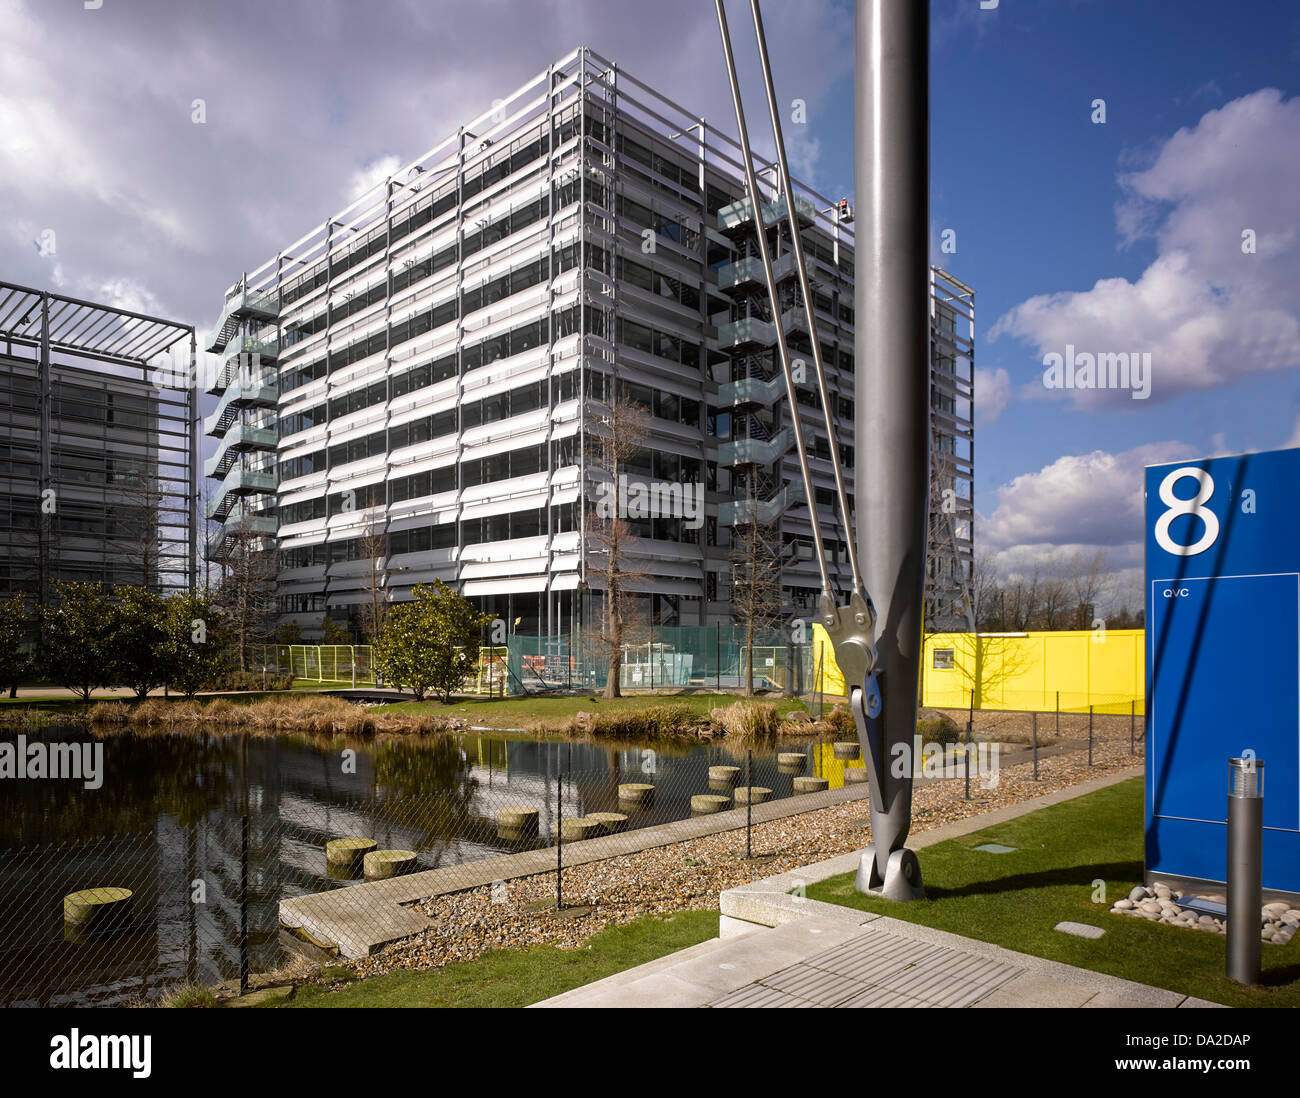 Chiswick Park, London, Vereinigtes Königreich. Architekt: Rogers Stirk Harbour + Partner, 2013. Gesamtüberblick in Chiswick Geschäft p Stockfoto